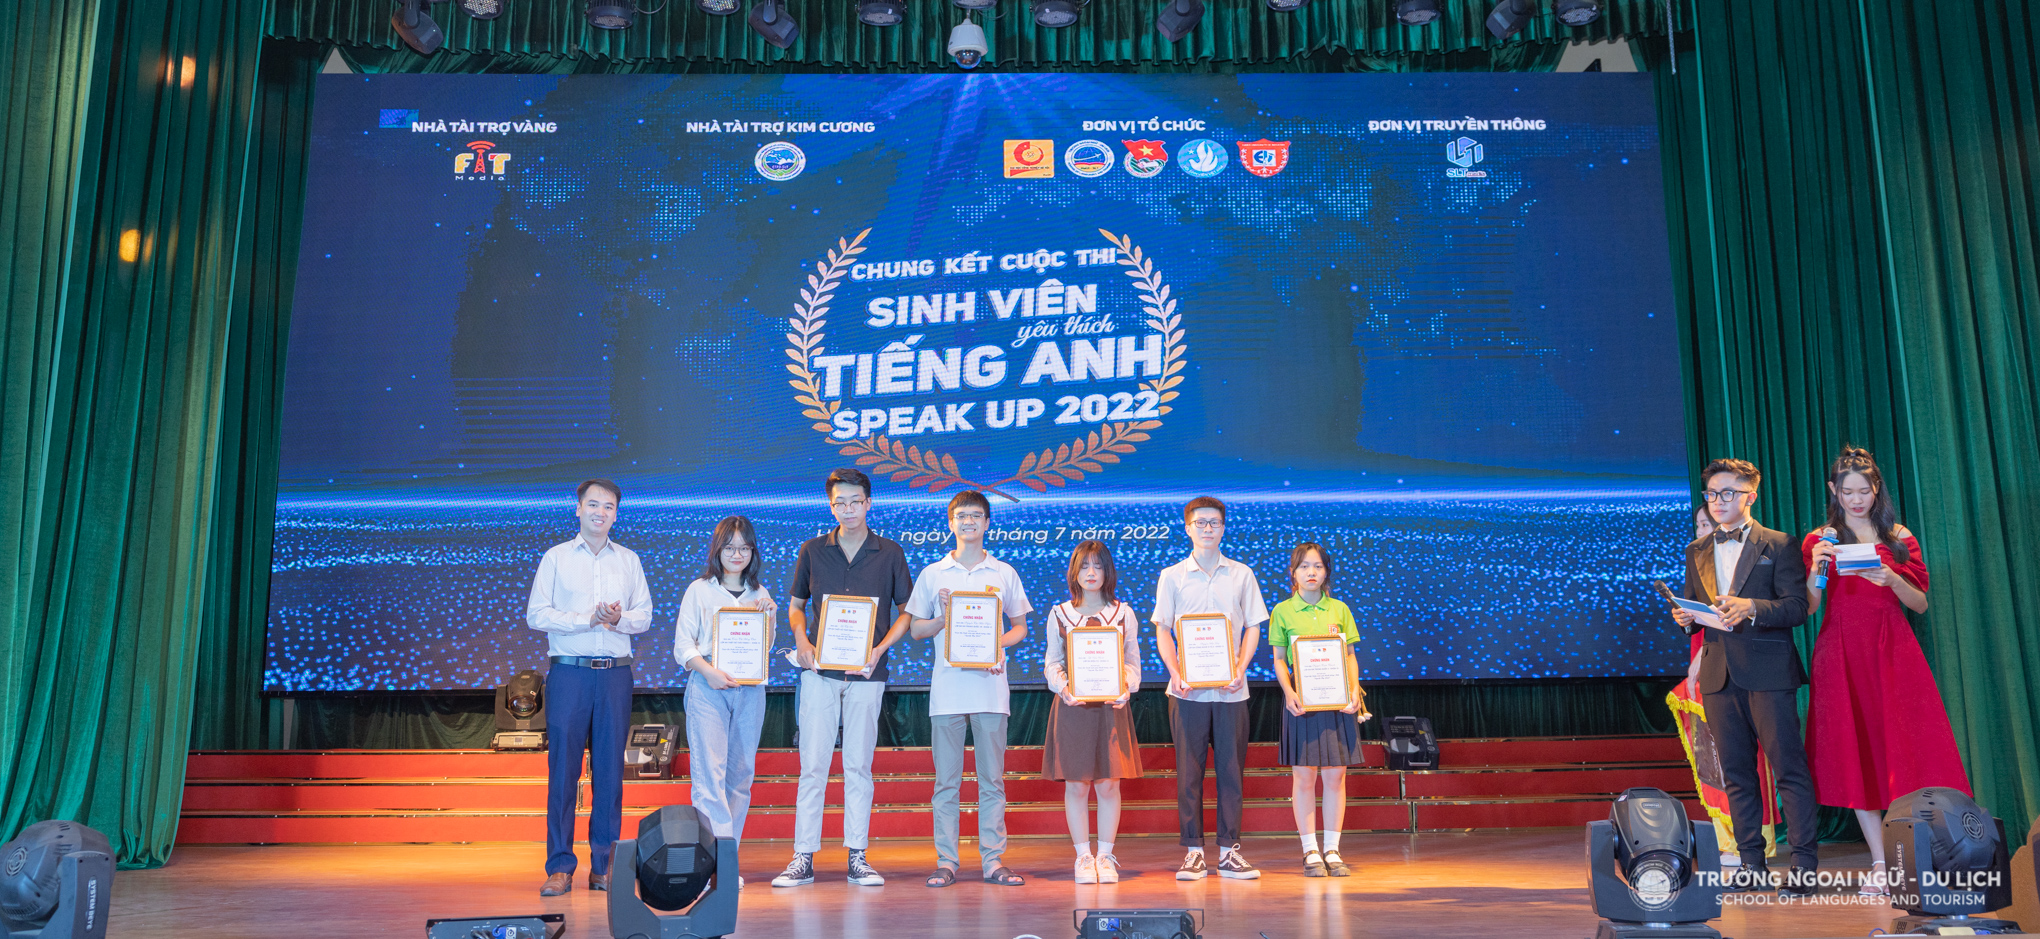 Ấn tượng đêm chung kết Cuộc thi sinh viên yêu thích tiếng Anh Speak Up 2022 